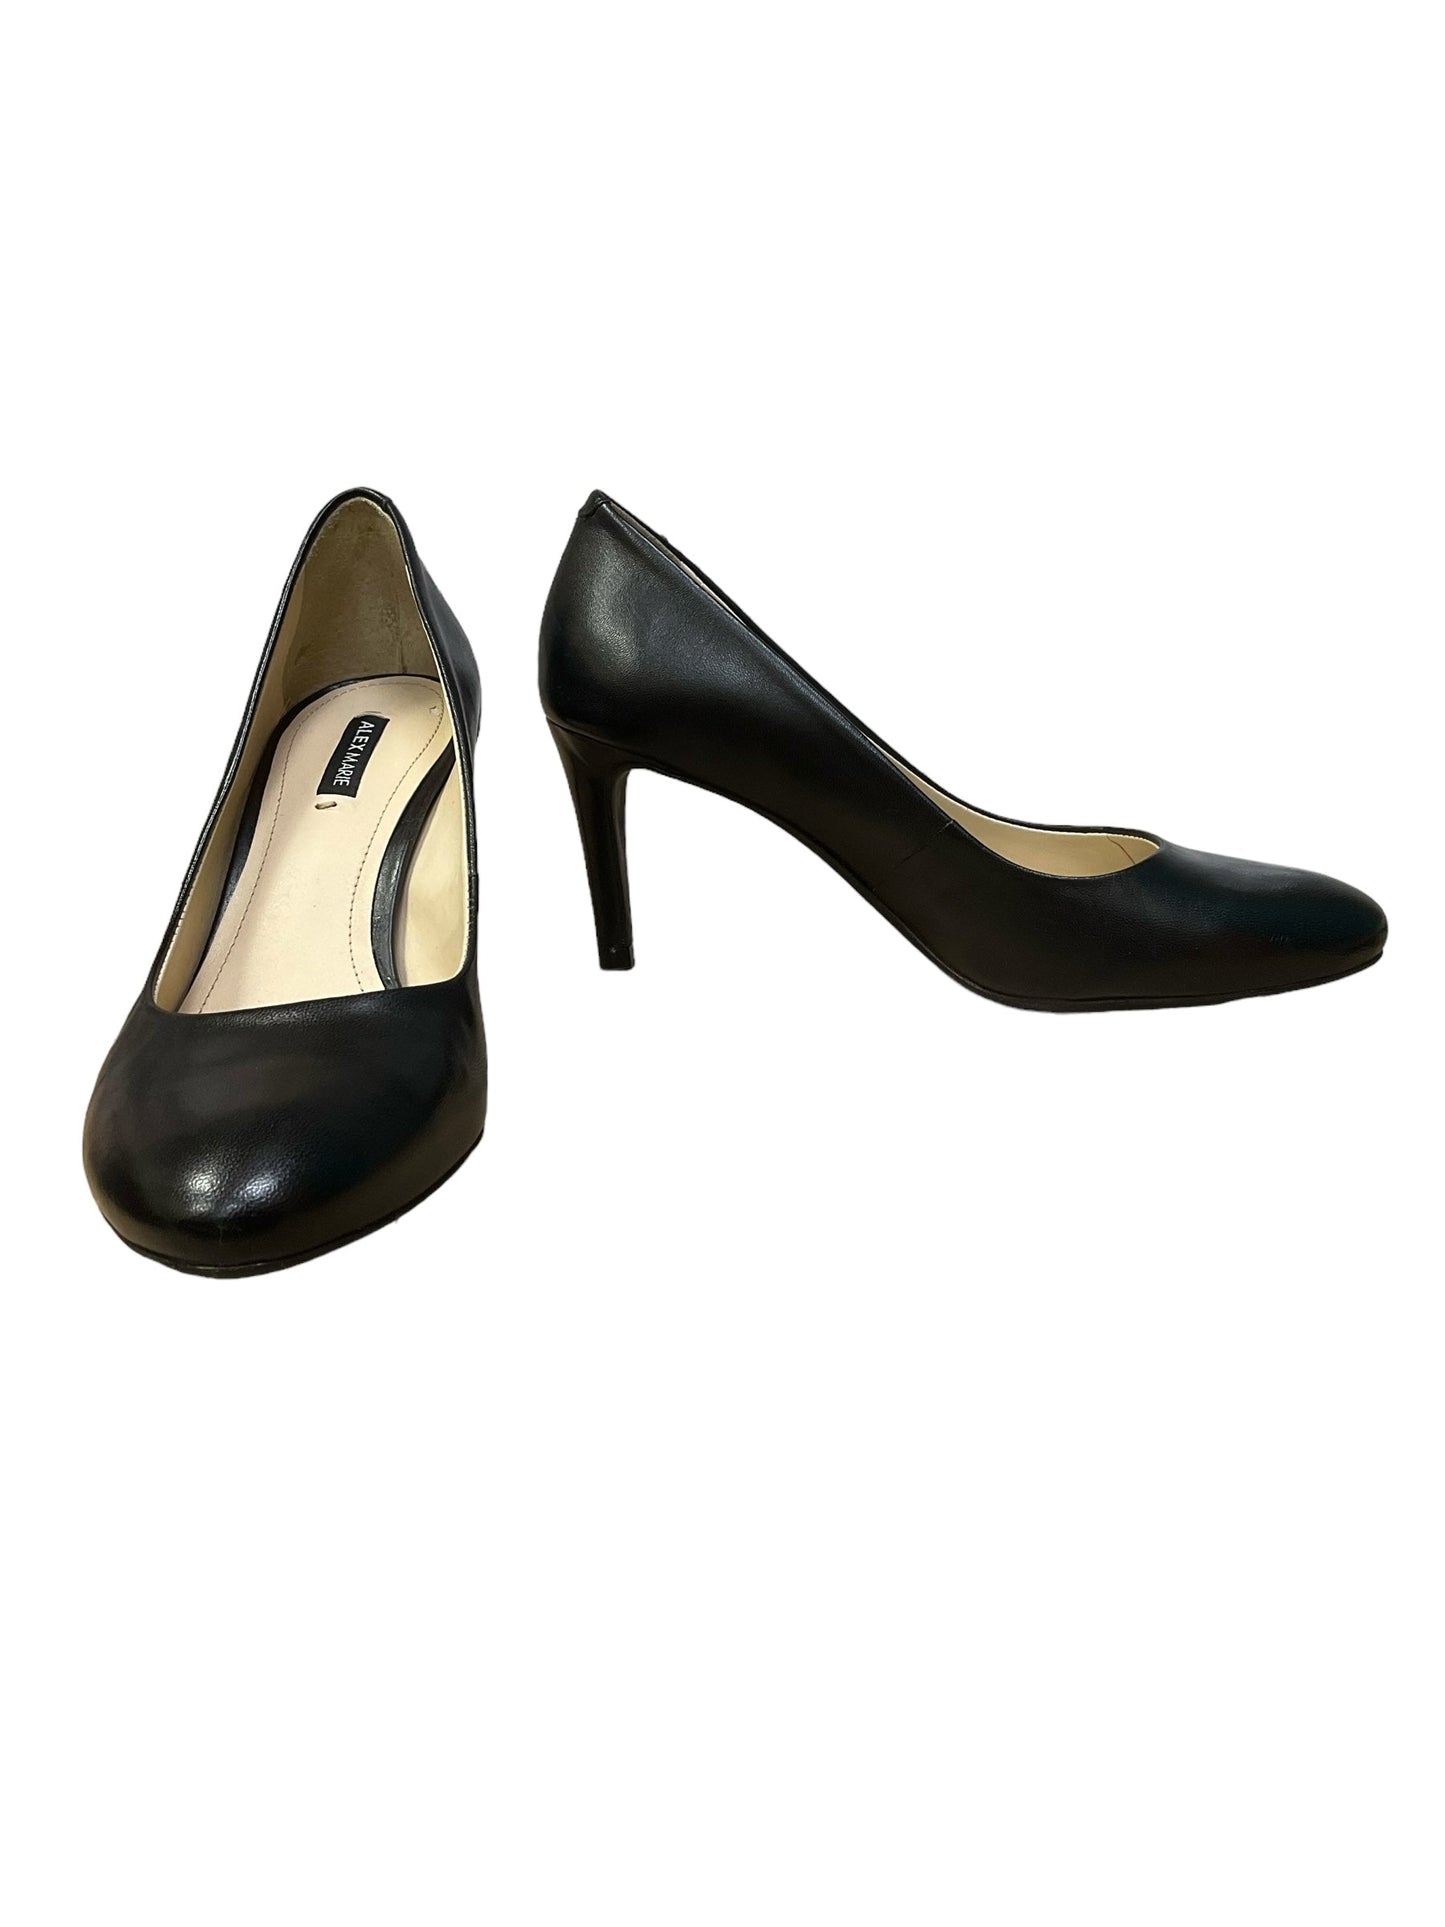 Black Shoes Heels Stiletto Alex Marie, Size 7.5